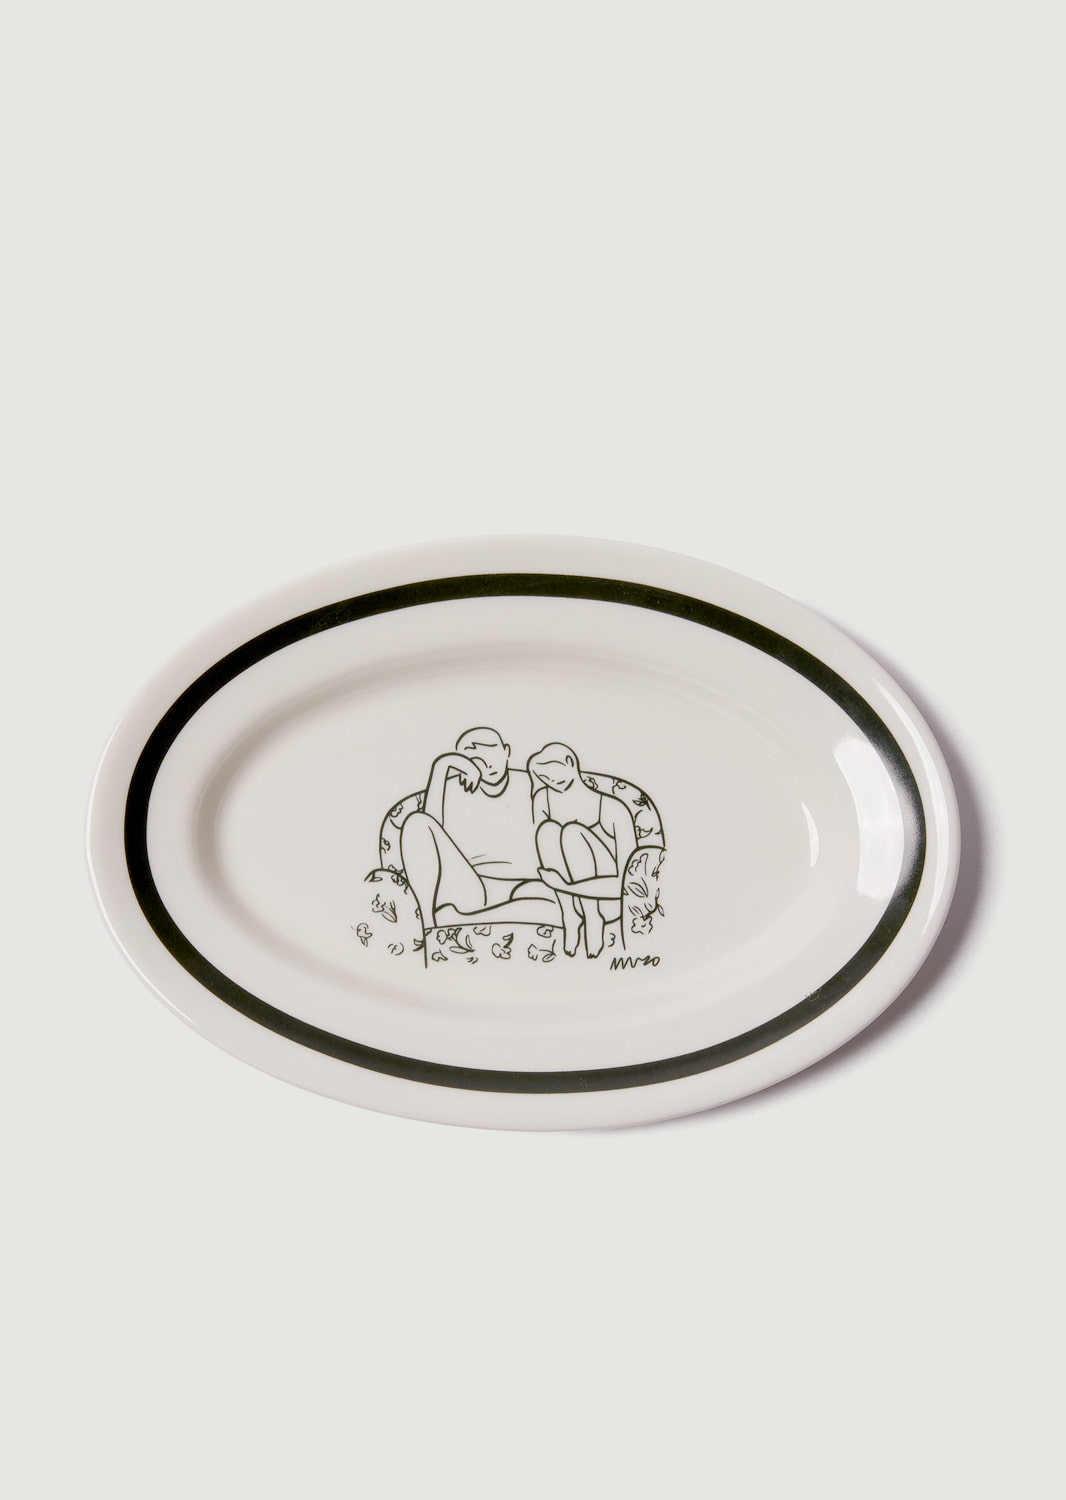 MINZO.KING ceramic oval tray